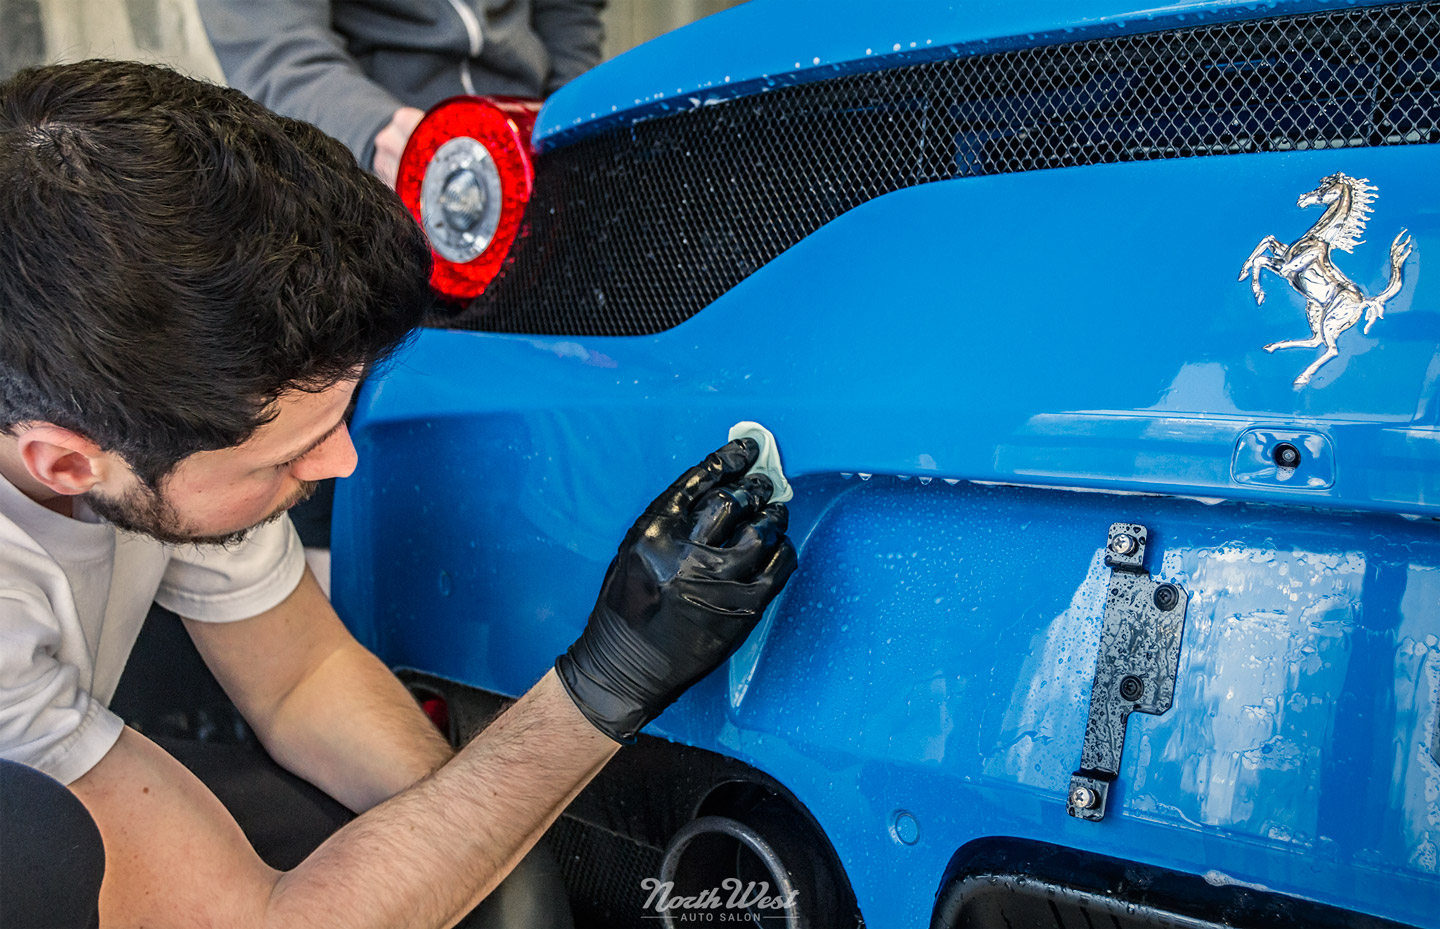 Azzurro-Dino-Ferrari-458-Speciale-New-car-detail-clay-s